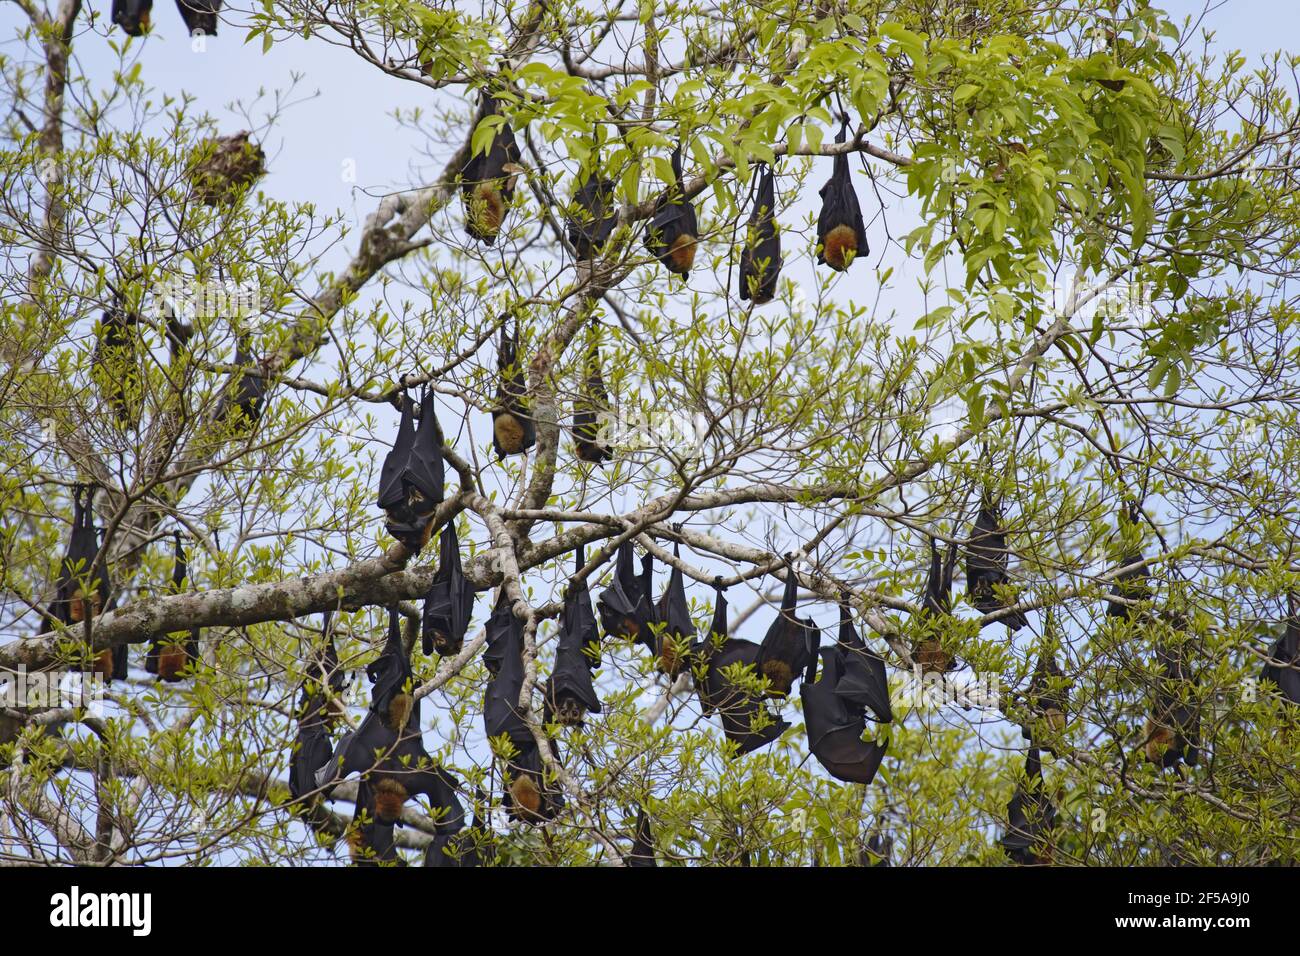 Bat di frutta con spettacolo - rospo diurno lungo il fiume Pteropus cospicillatus Daintree Queensland, Australia MA003197 Foto Stock